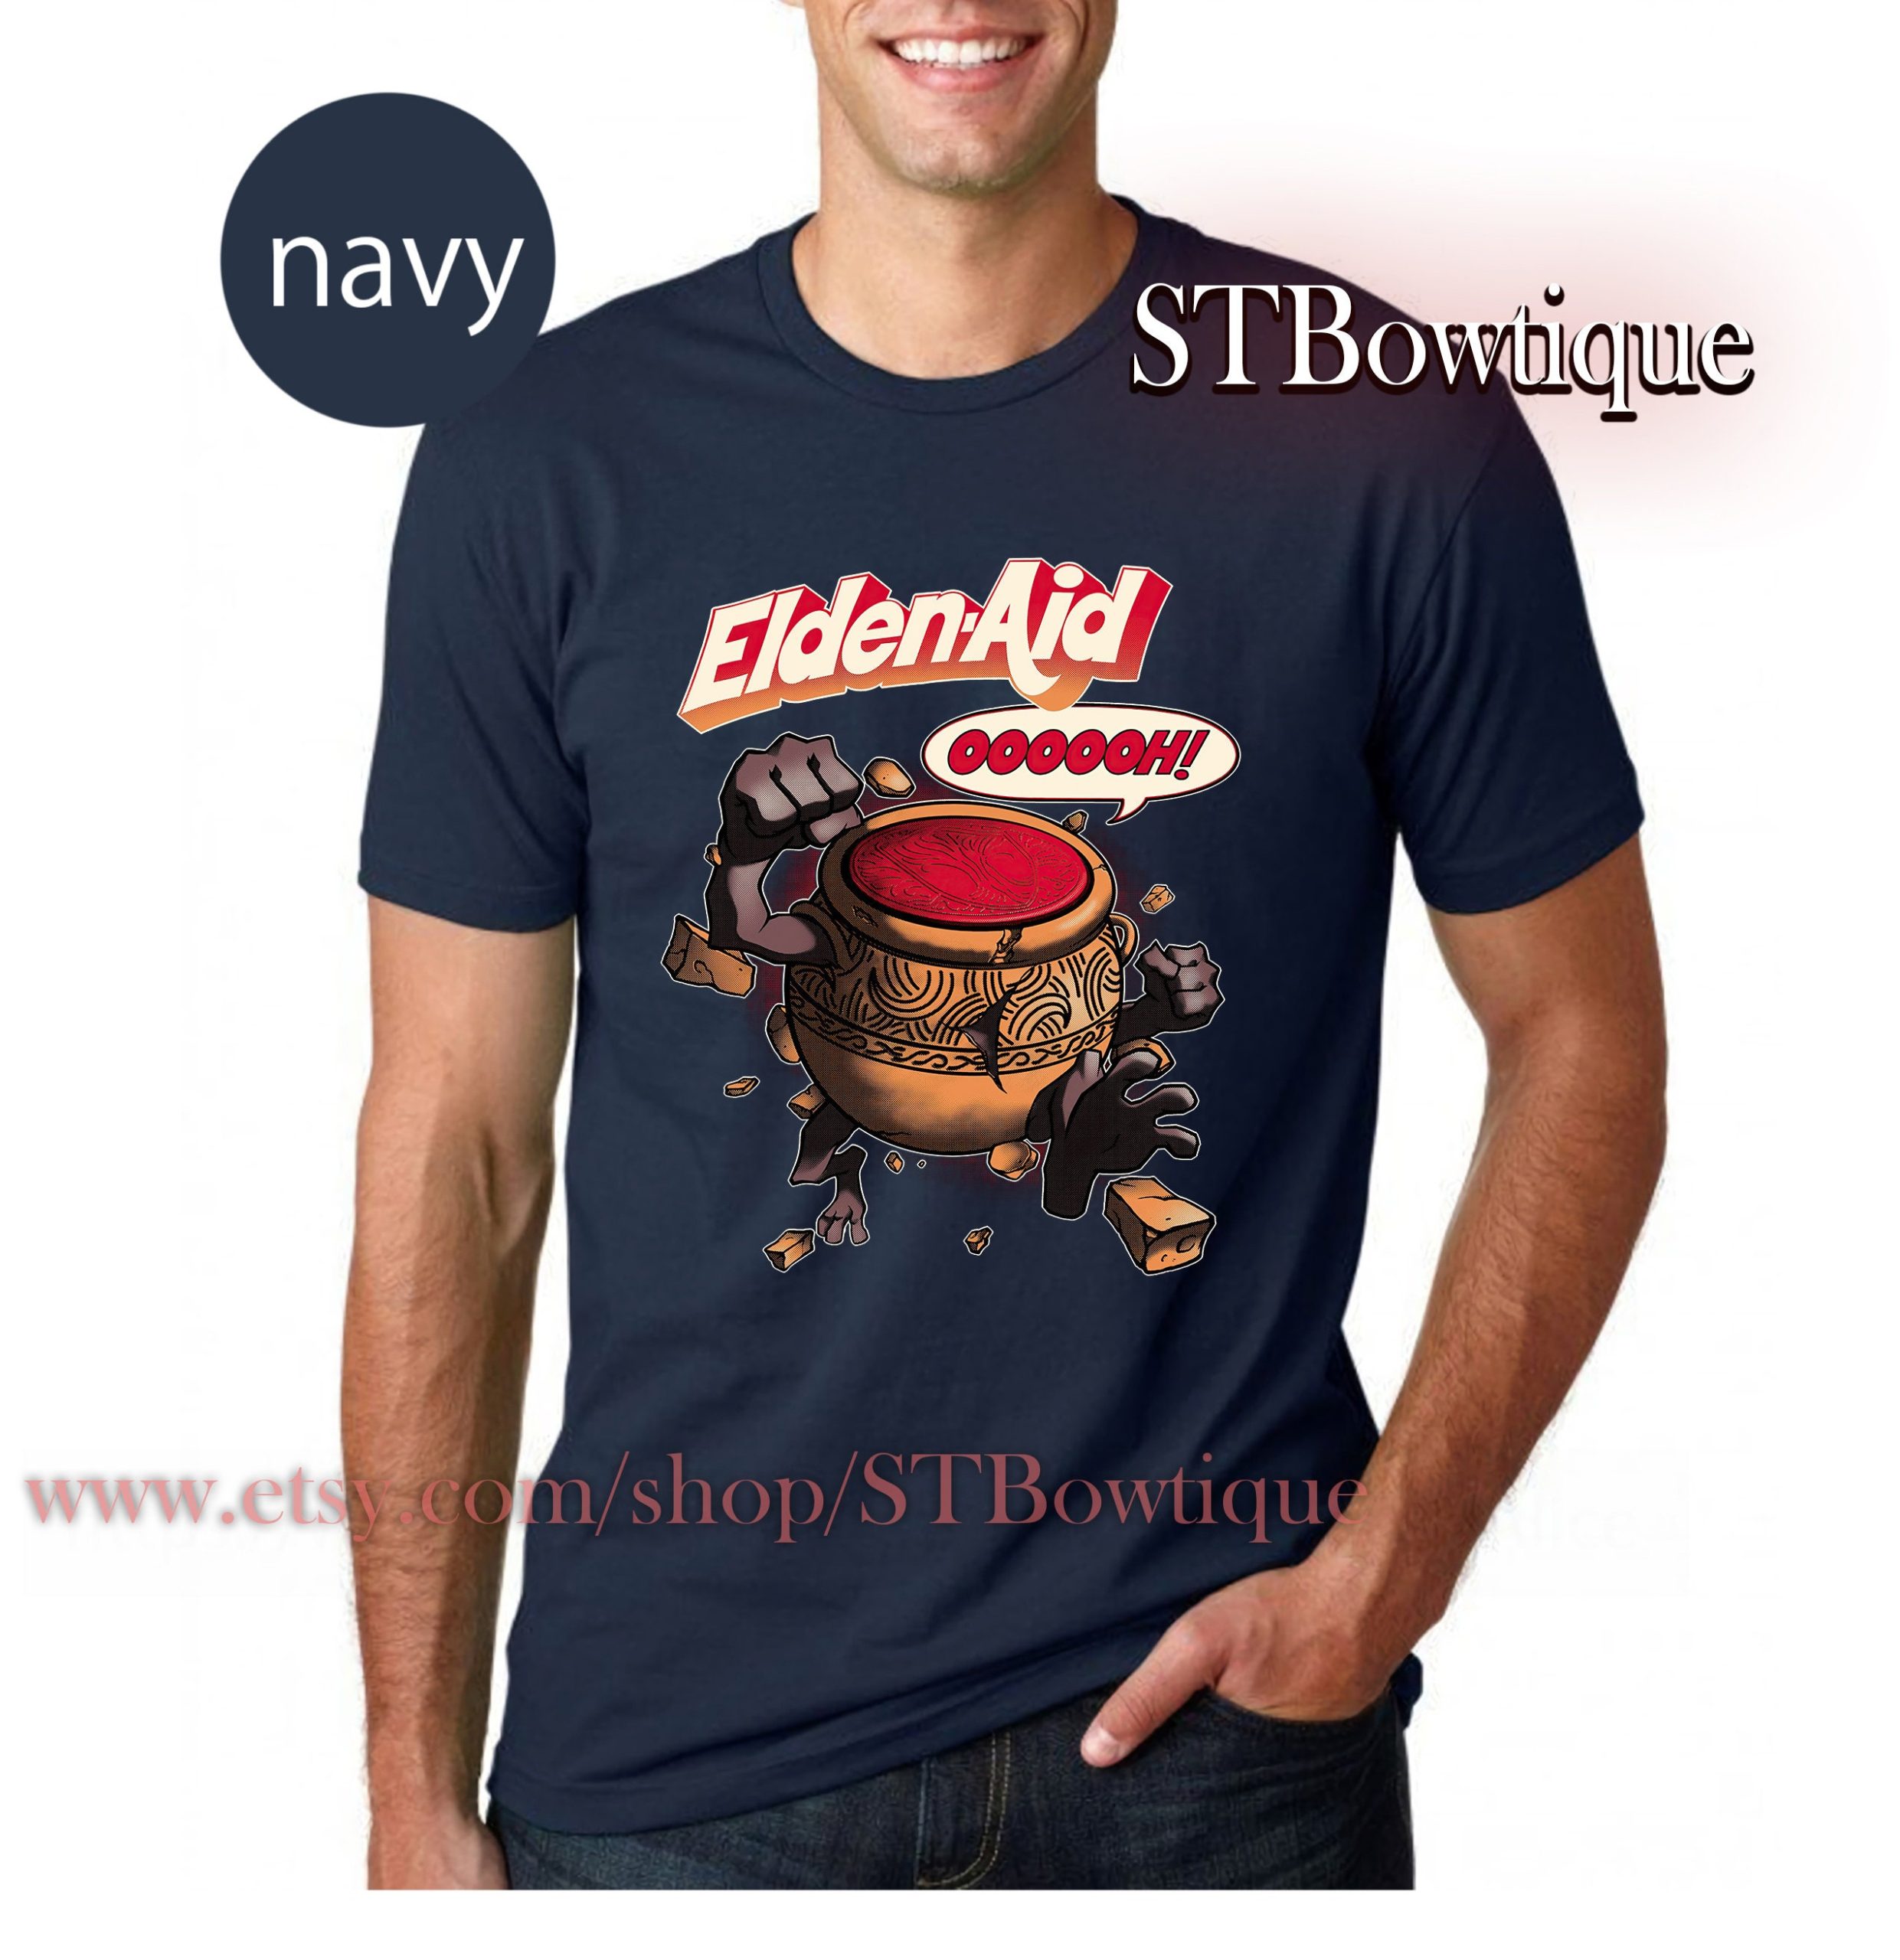 Eldenaid Elden Ring Gamer Video Game Unisex T-Shirt